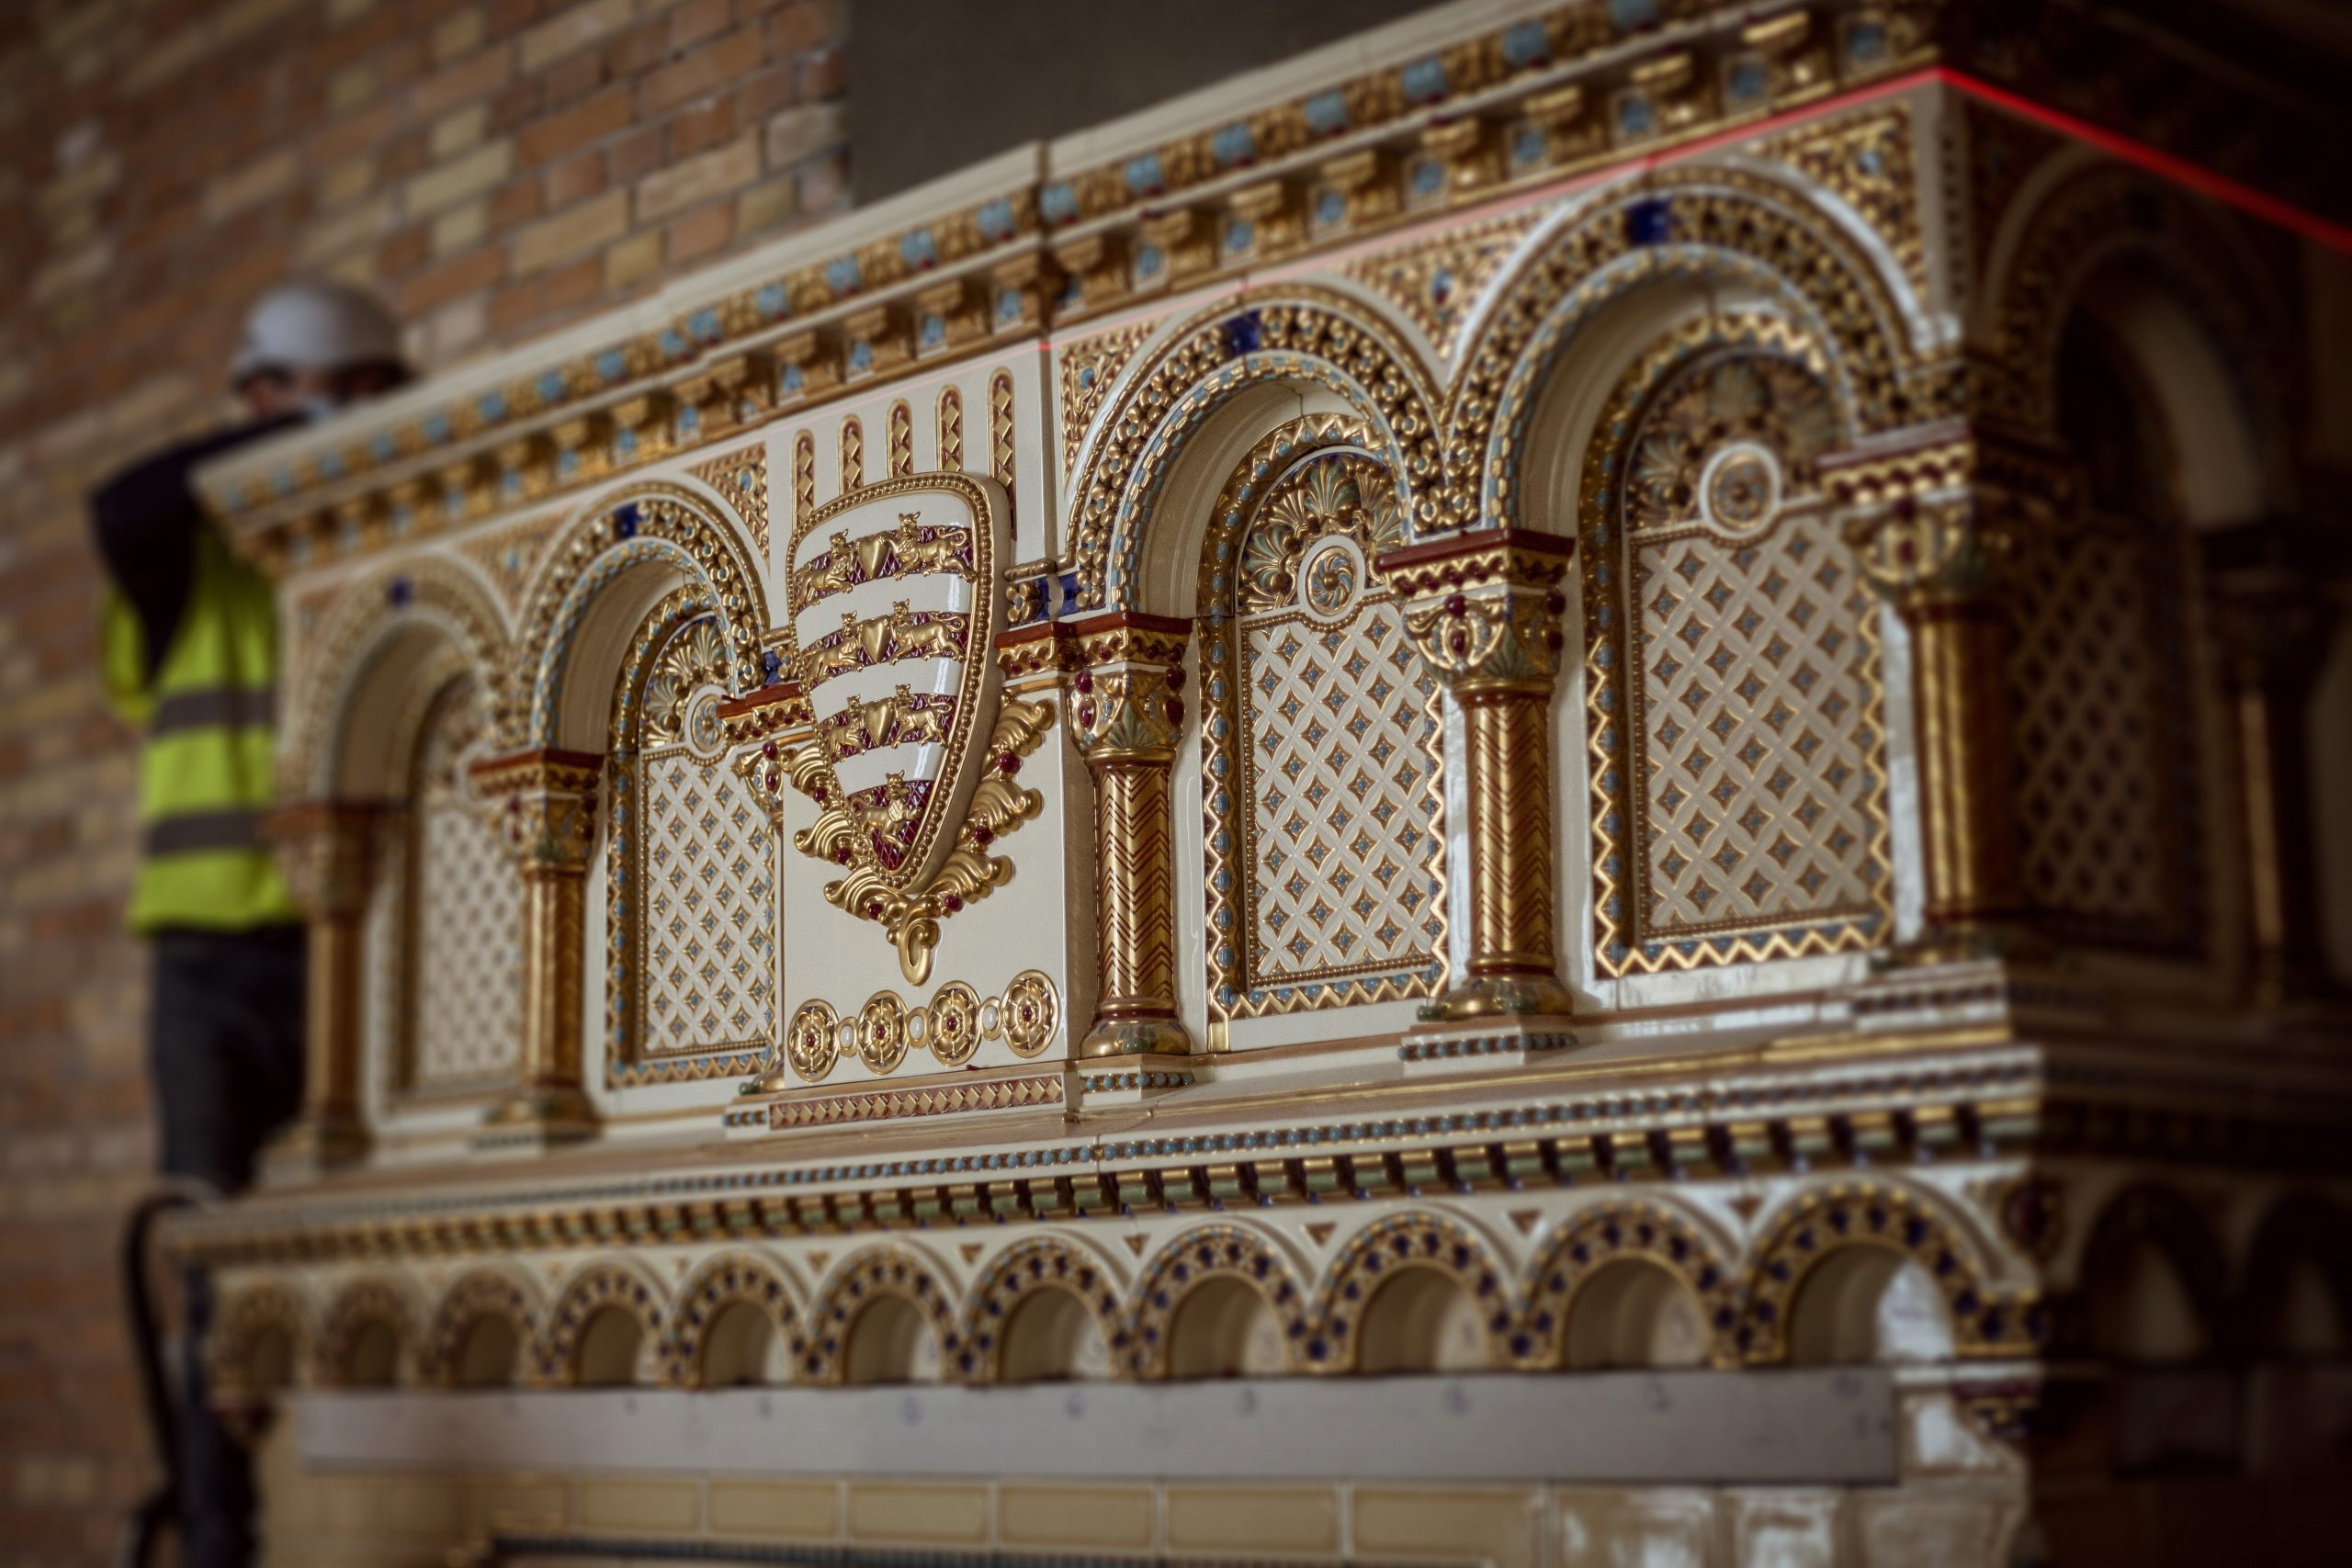 Ein Kilogramm Gold für die Restaurierung des Kamins im St. Stephans-Saal verwendet – Fotos!